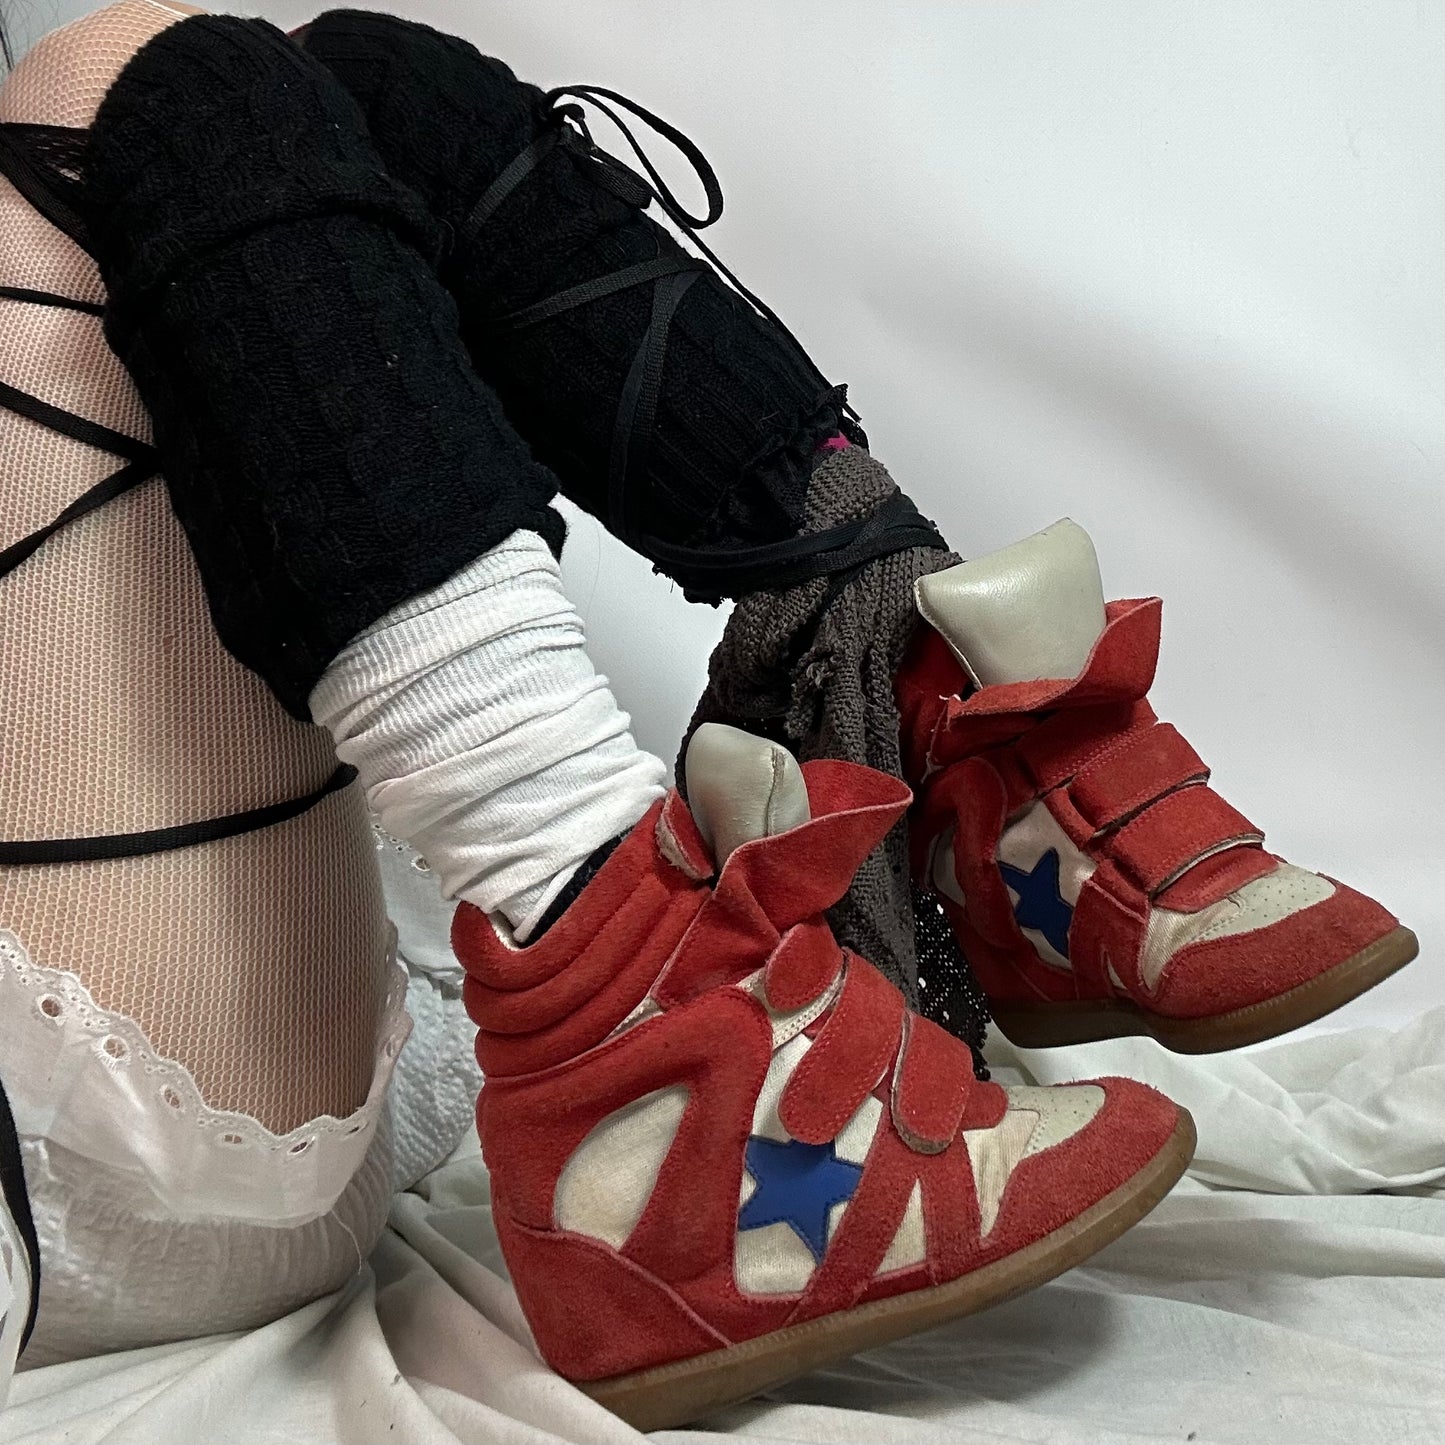 Isabel Marant Wedge Sneakers 37/38